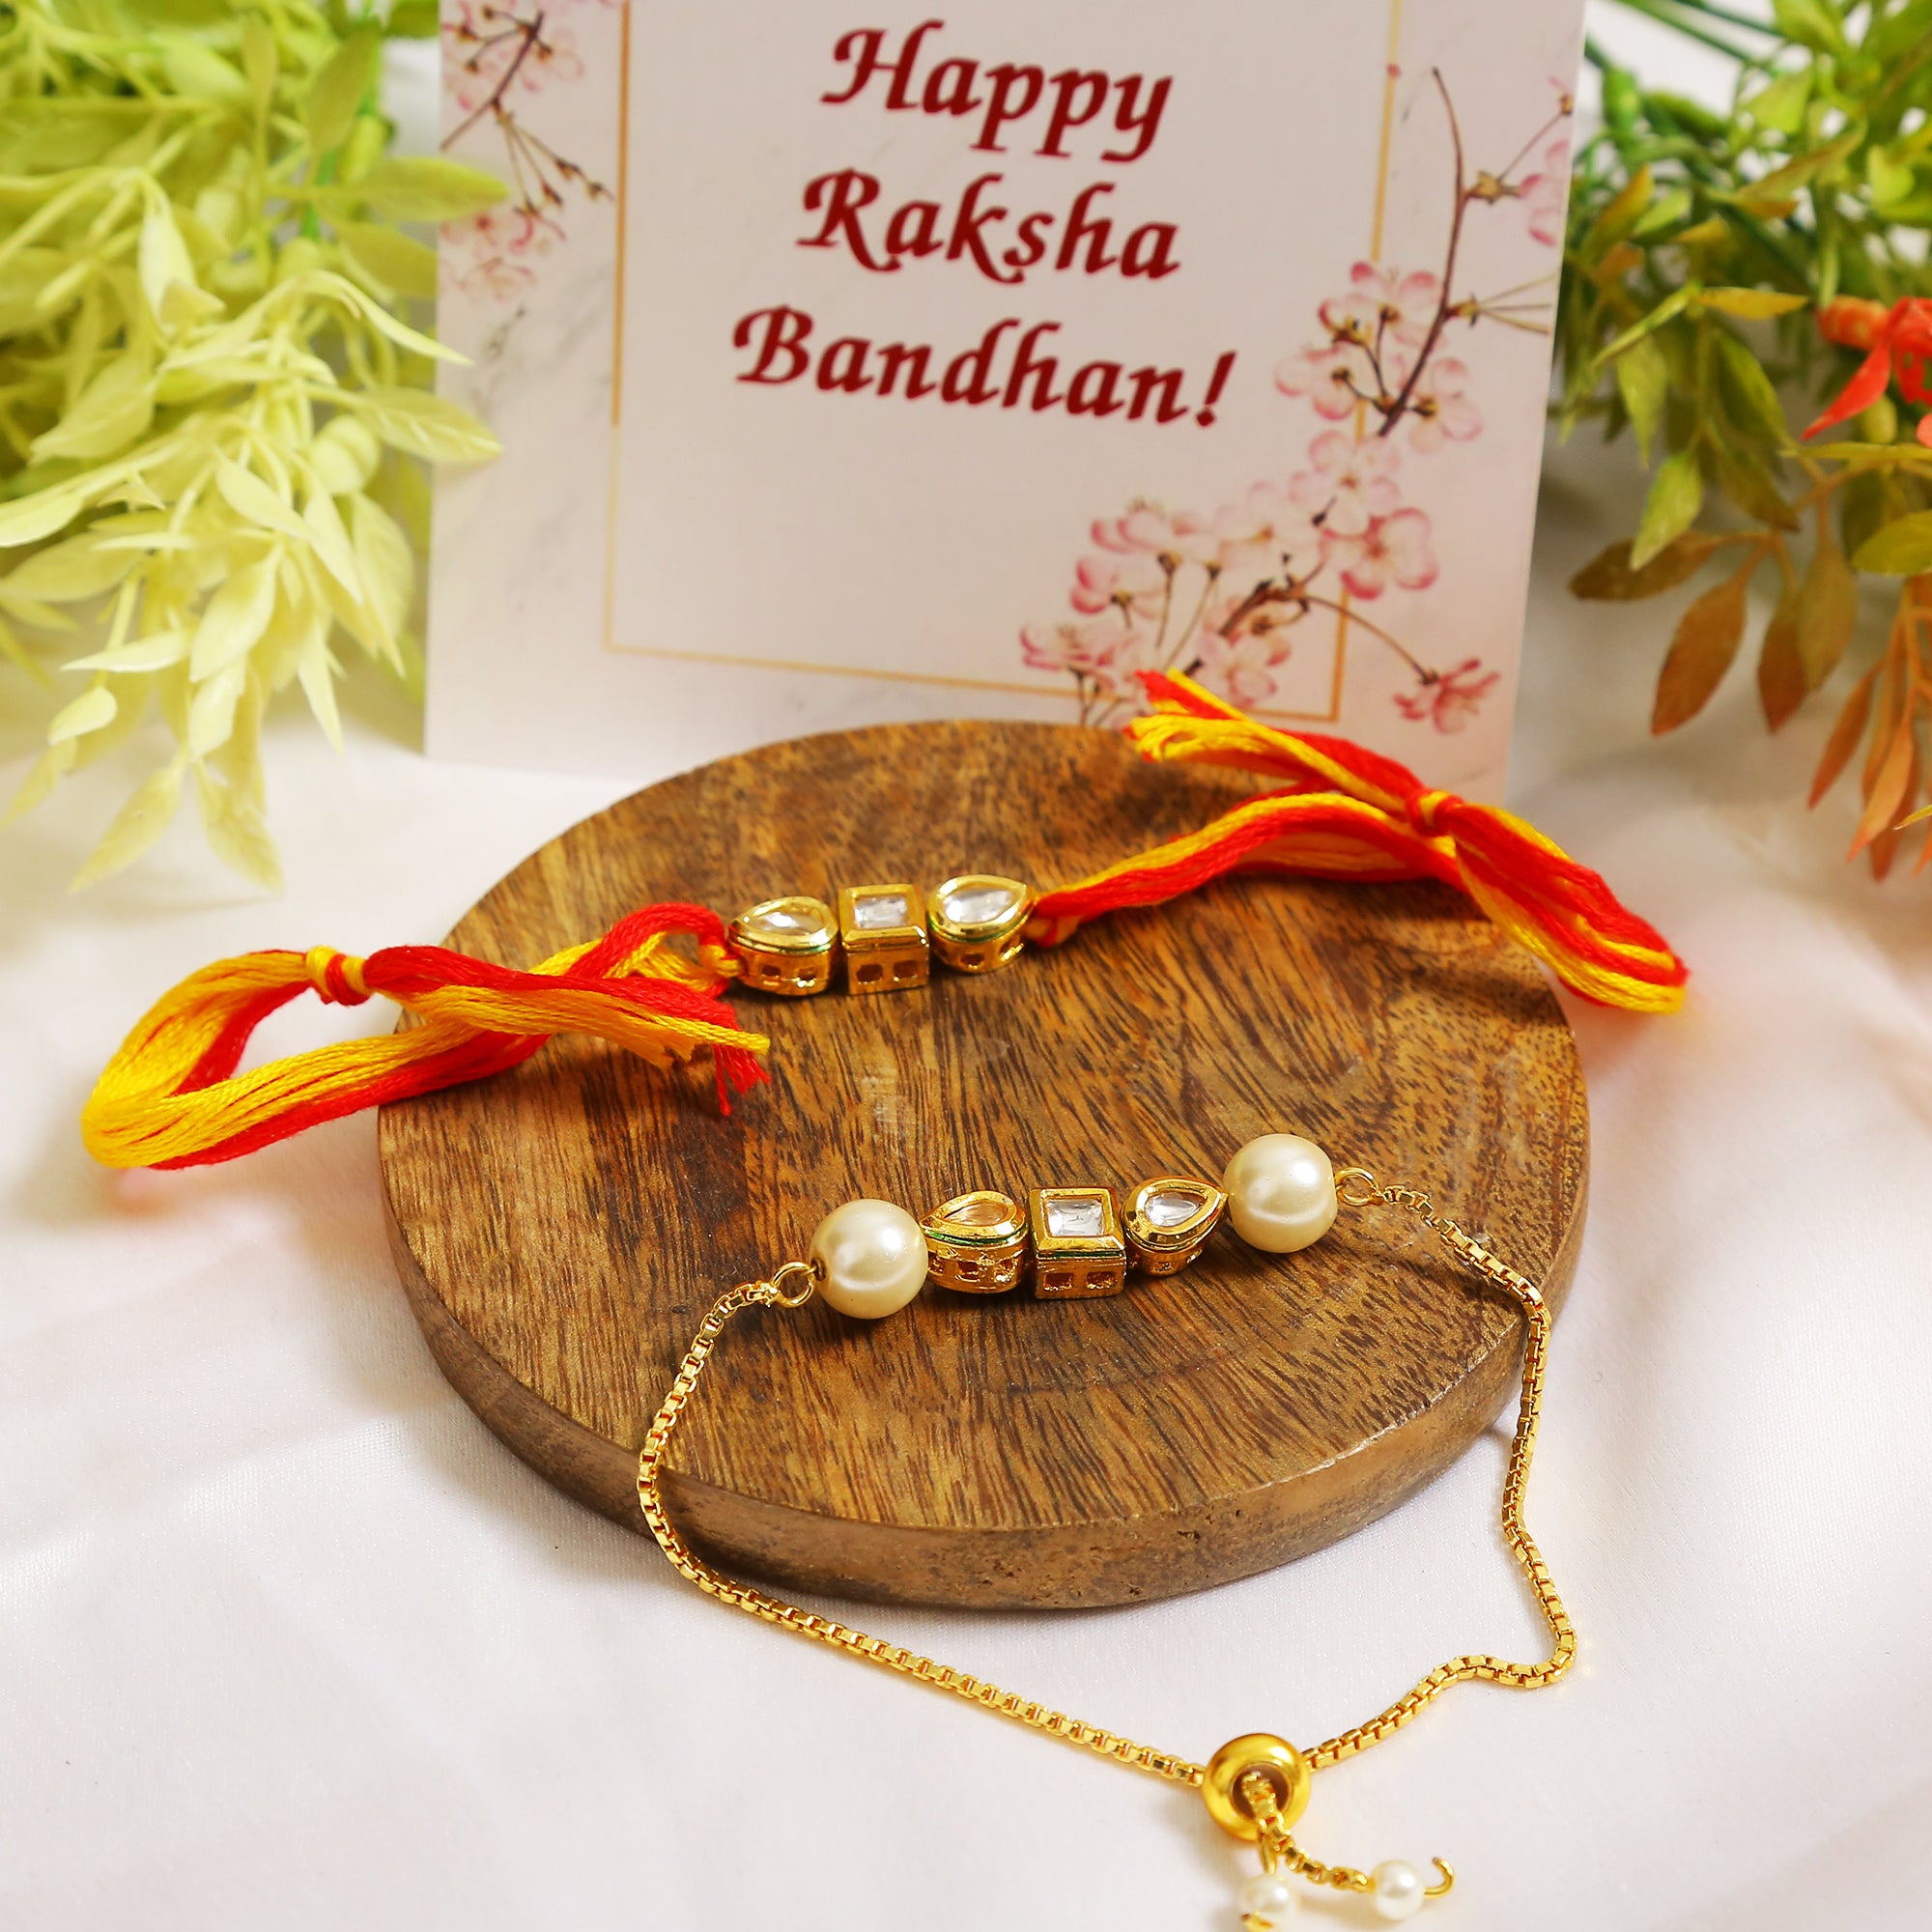 Set of 2 - Gold-Toned Kundan Embellished rakhi & lumba set